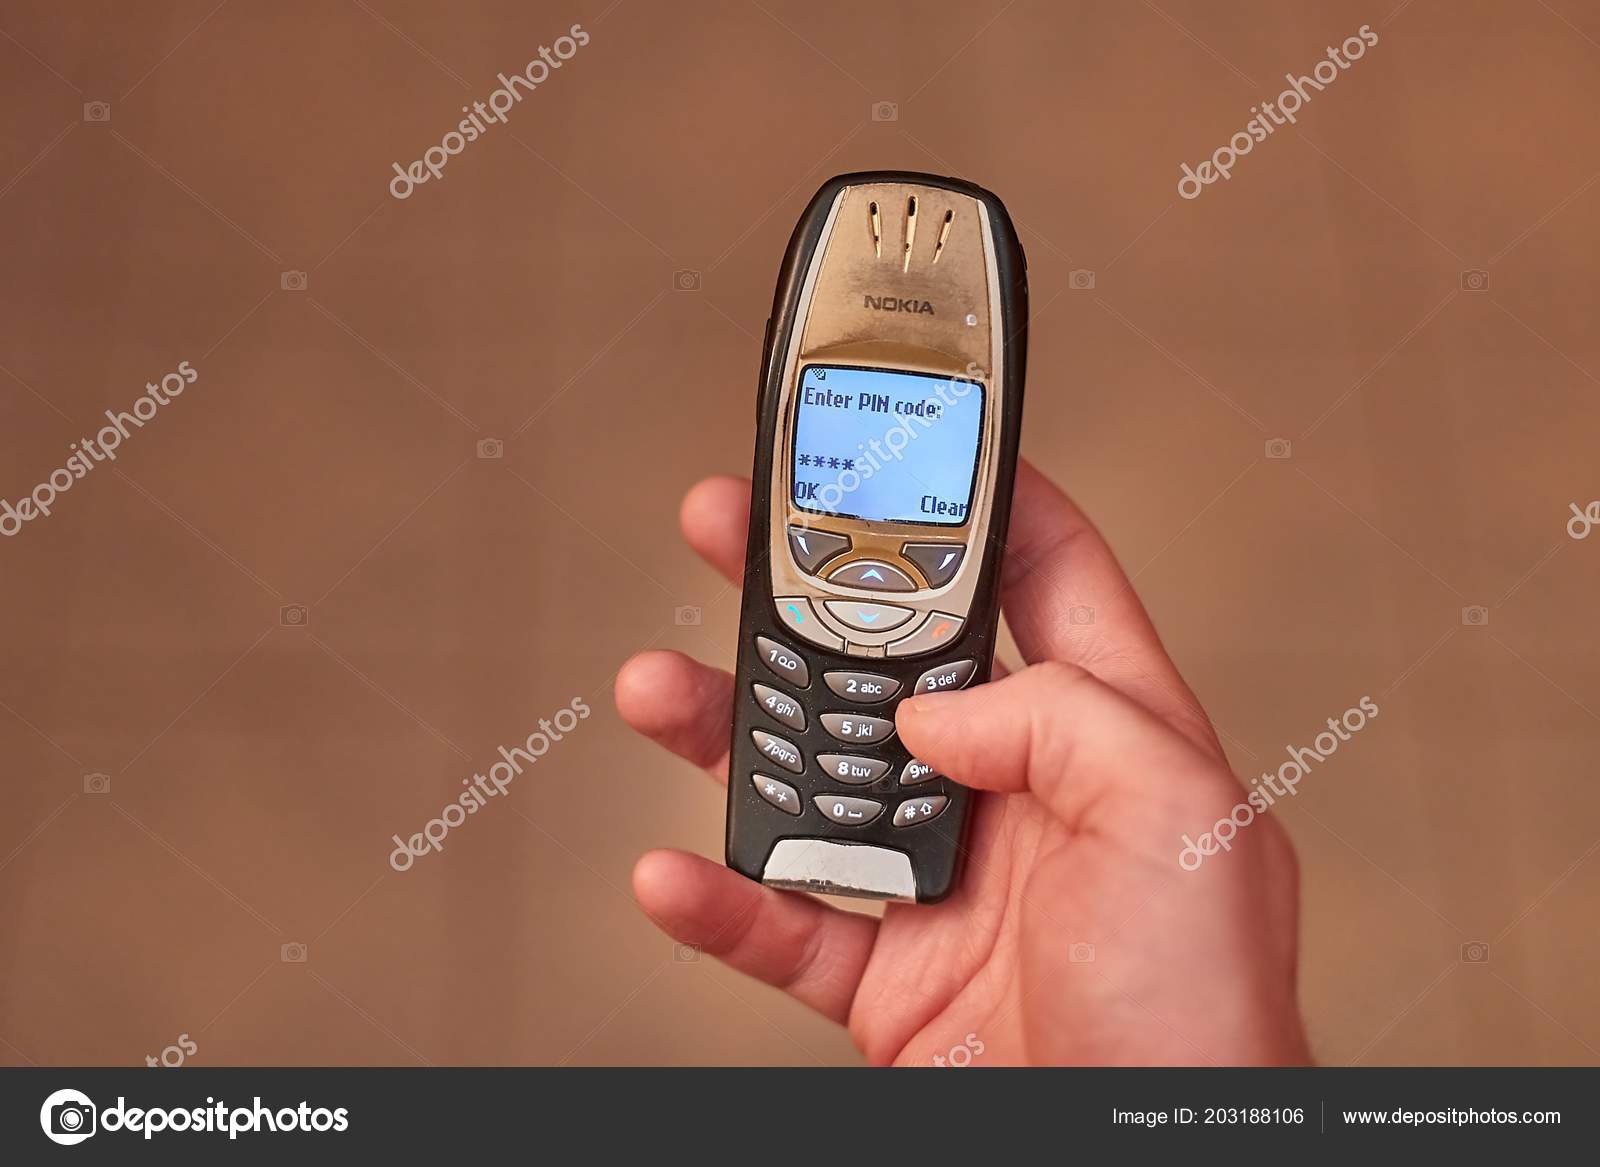 Teléfono móvil Nokia antiguo — Foto editorial de stock © Gudella #203188106